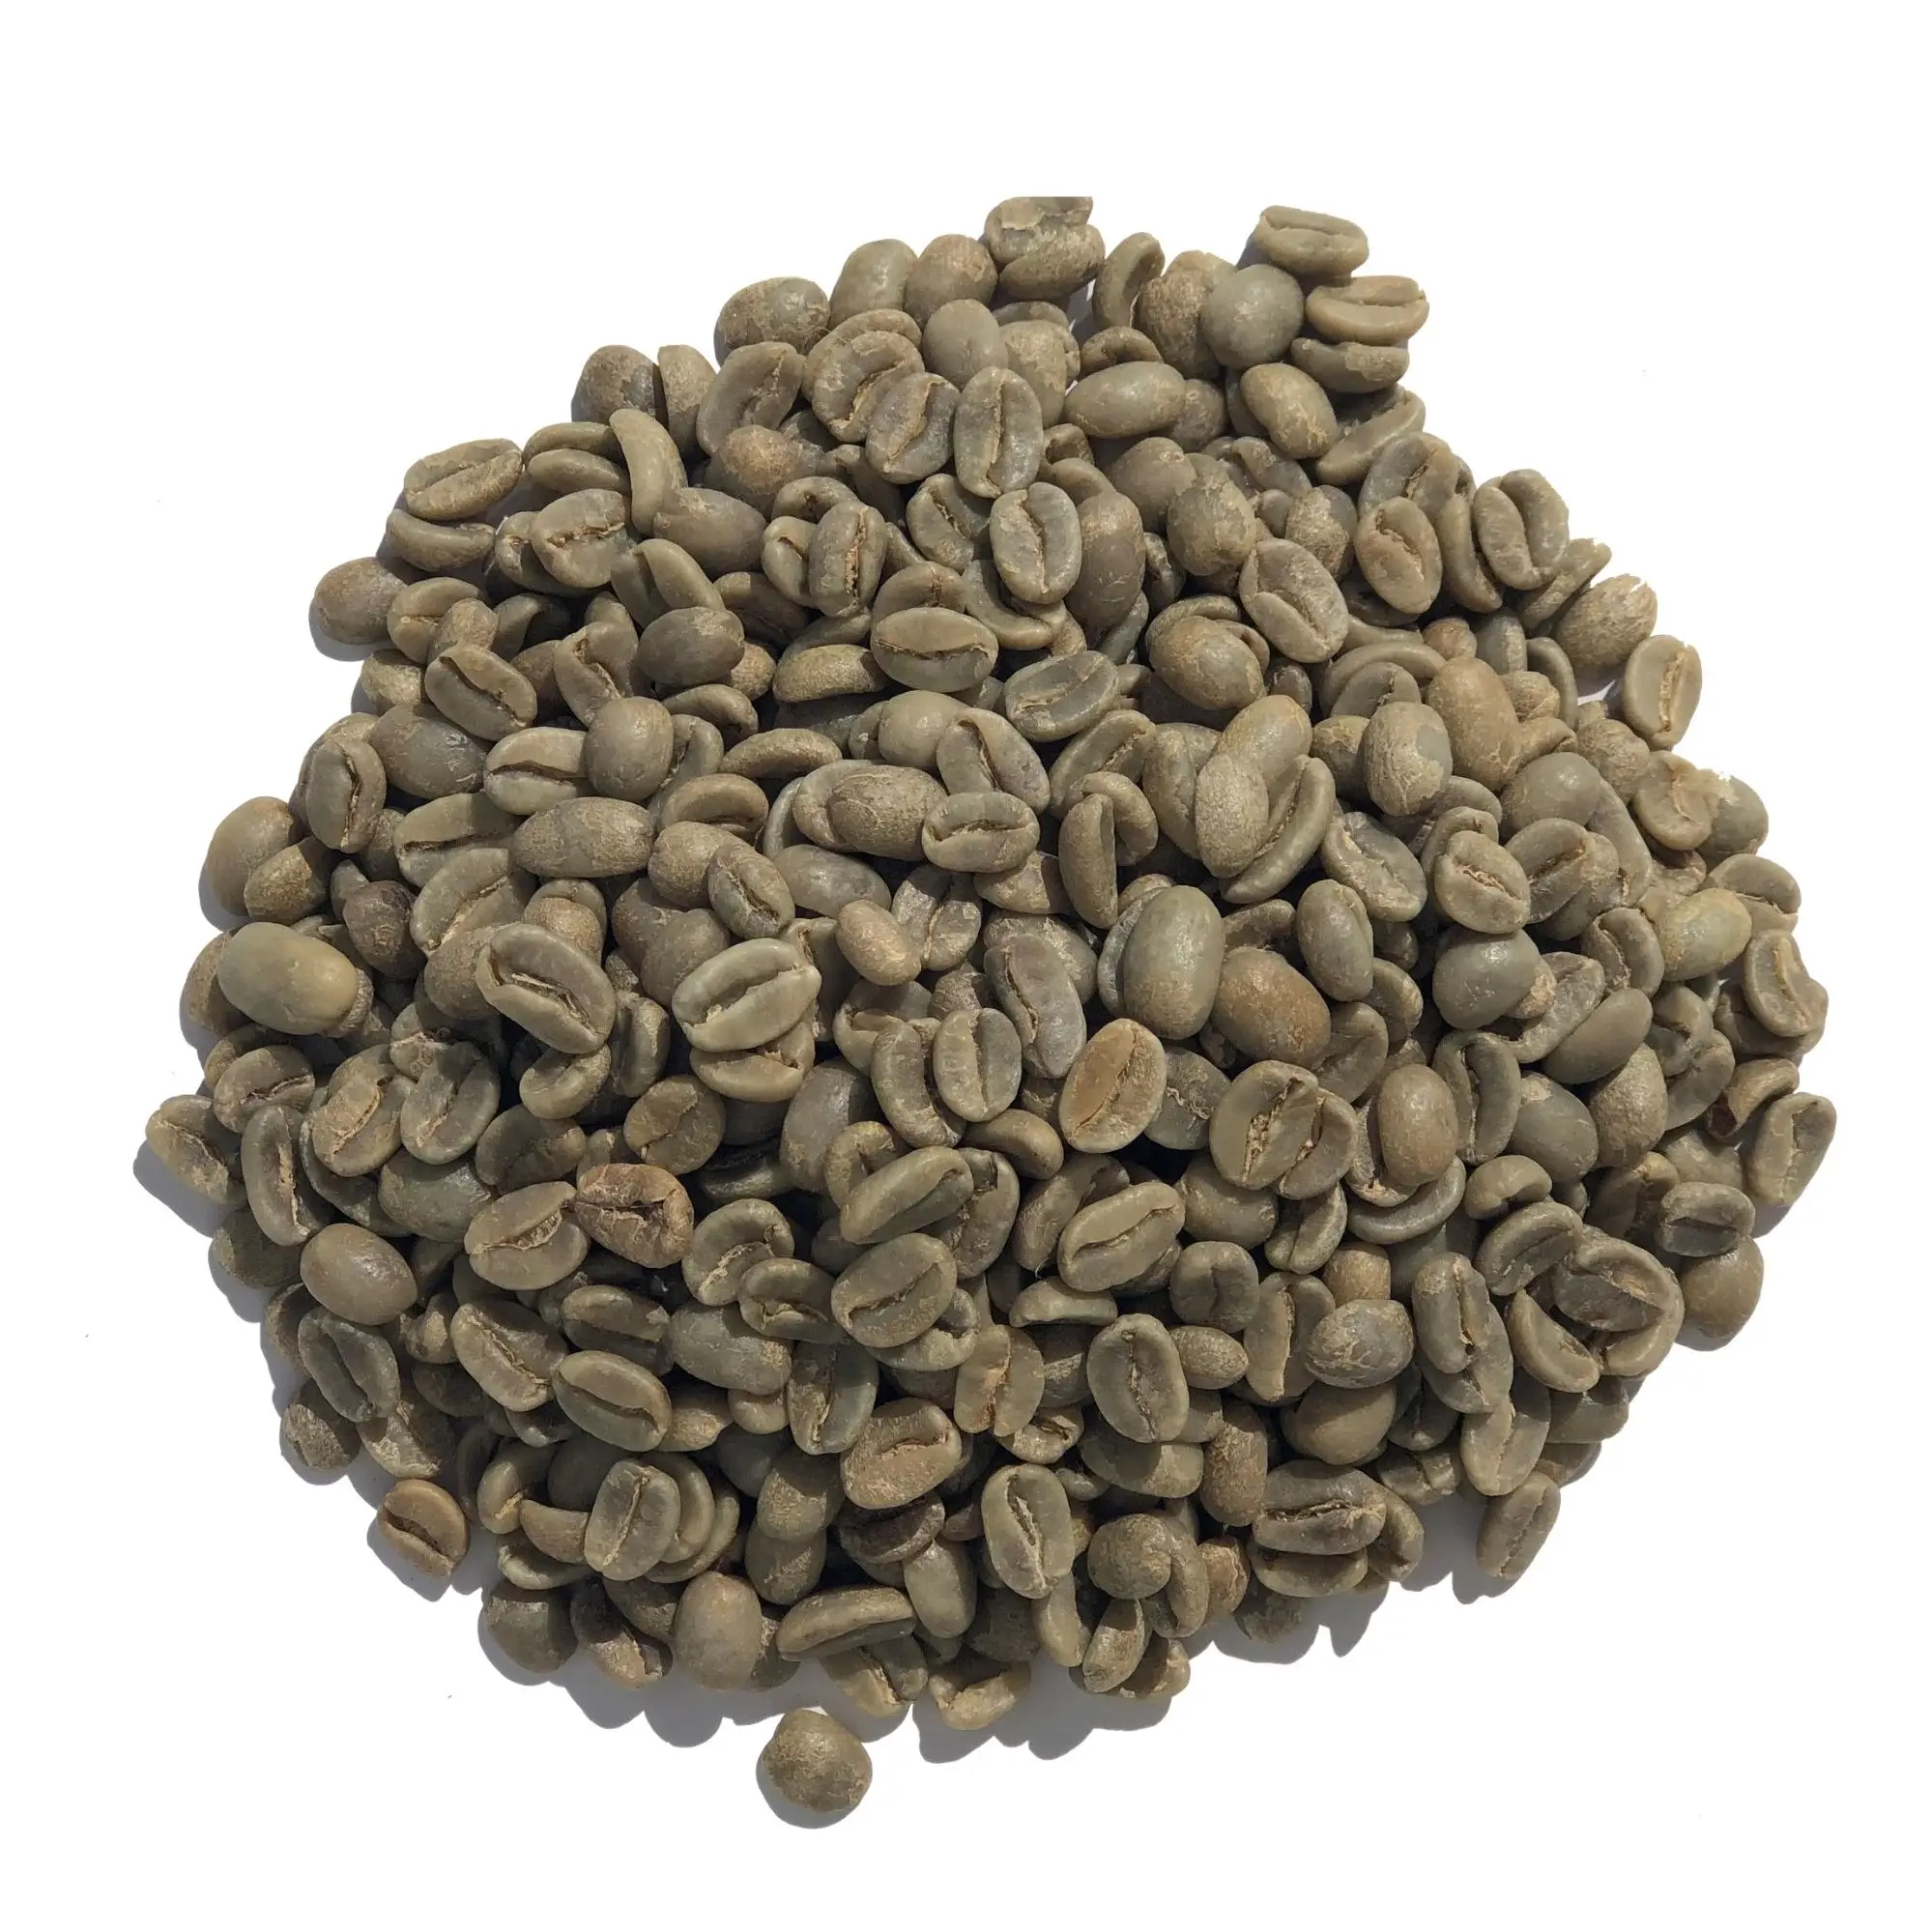 Grand nombre de grains de café vert disponibles Fournisseur vietnamien de café Robusta Arabica brut-60kg/sac de jute